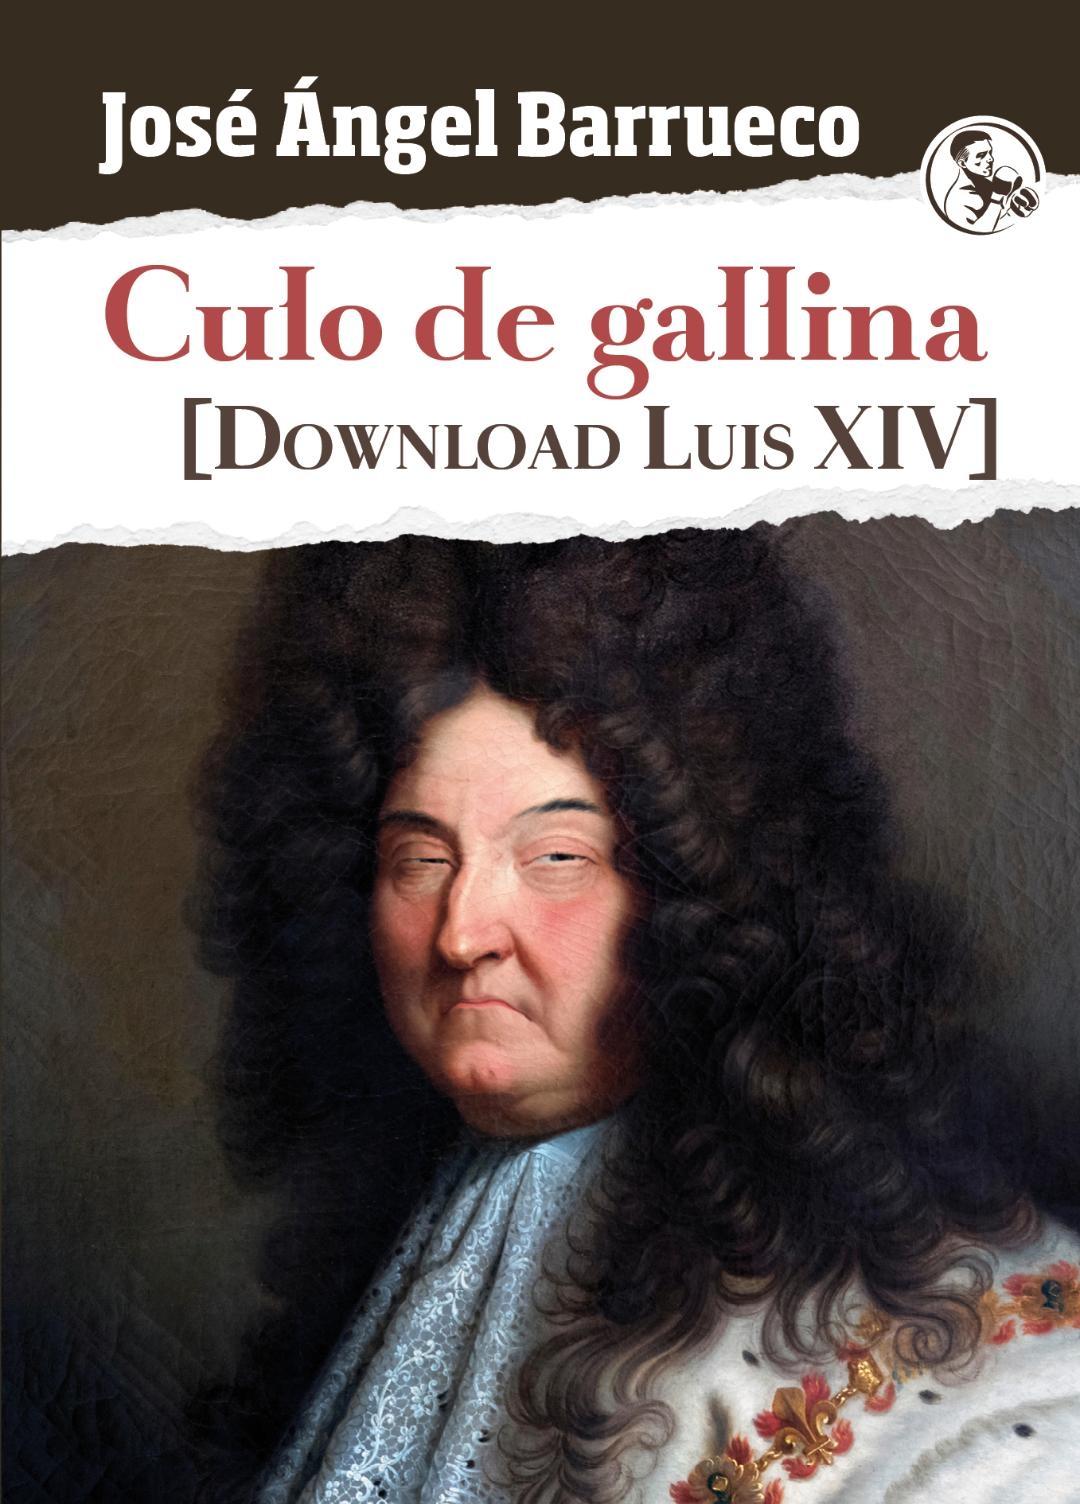 Culo de gallina "Download Luis XIV"